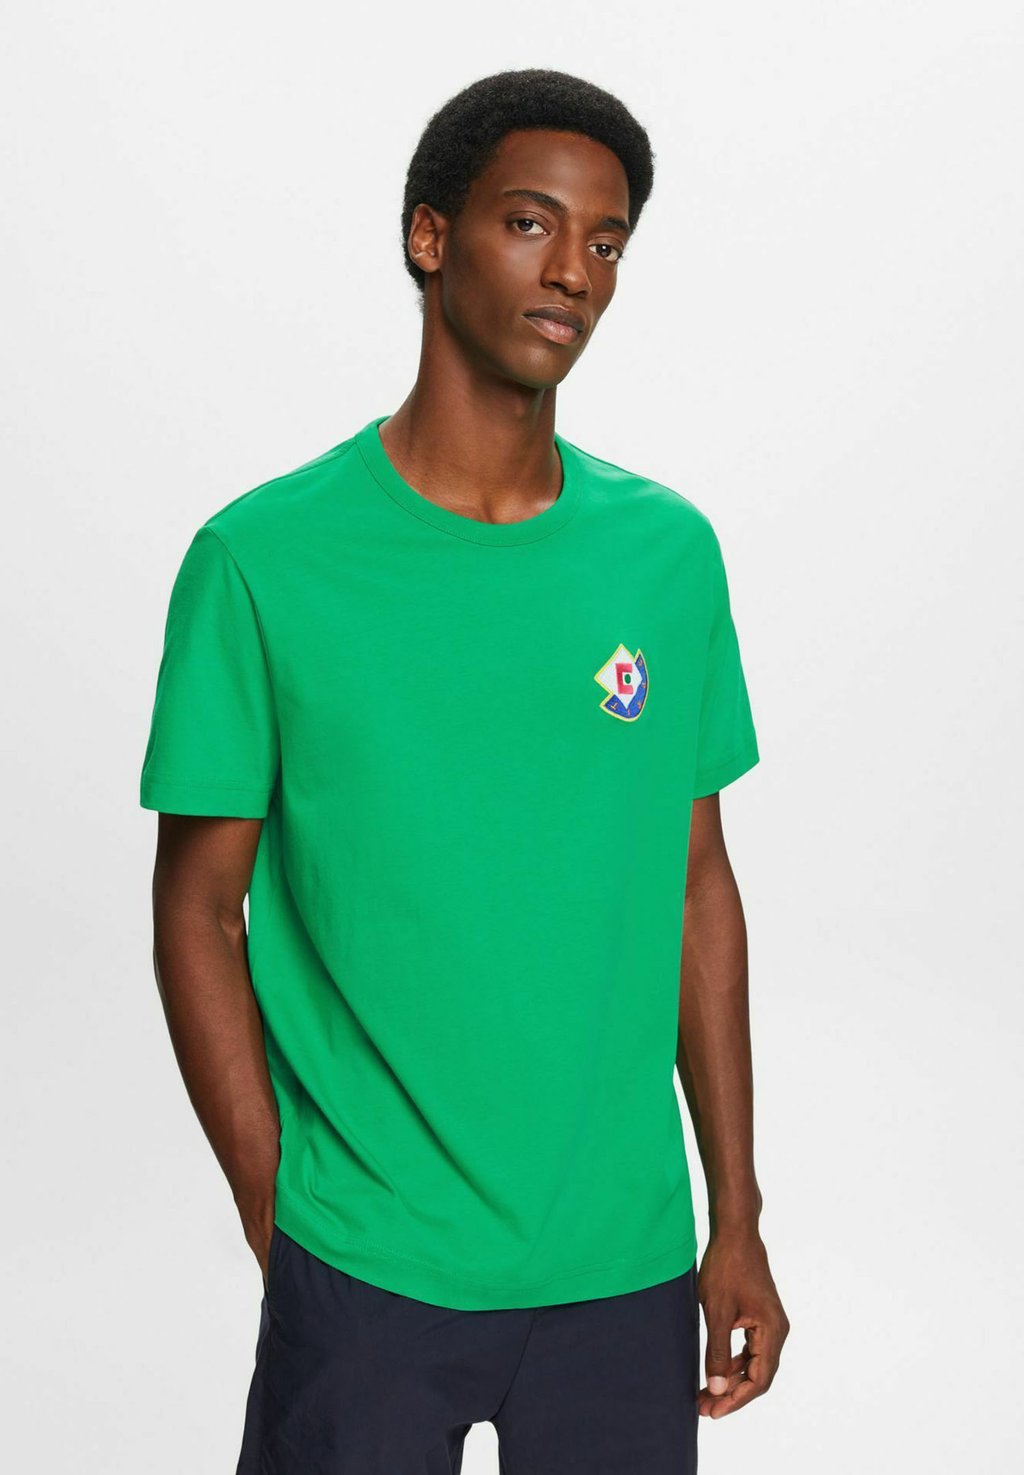 Базовая футболка Esprit, зеленый базовая футболка kurzärmliger esprit зеленый